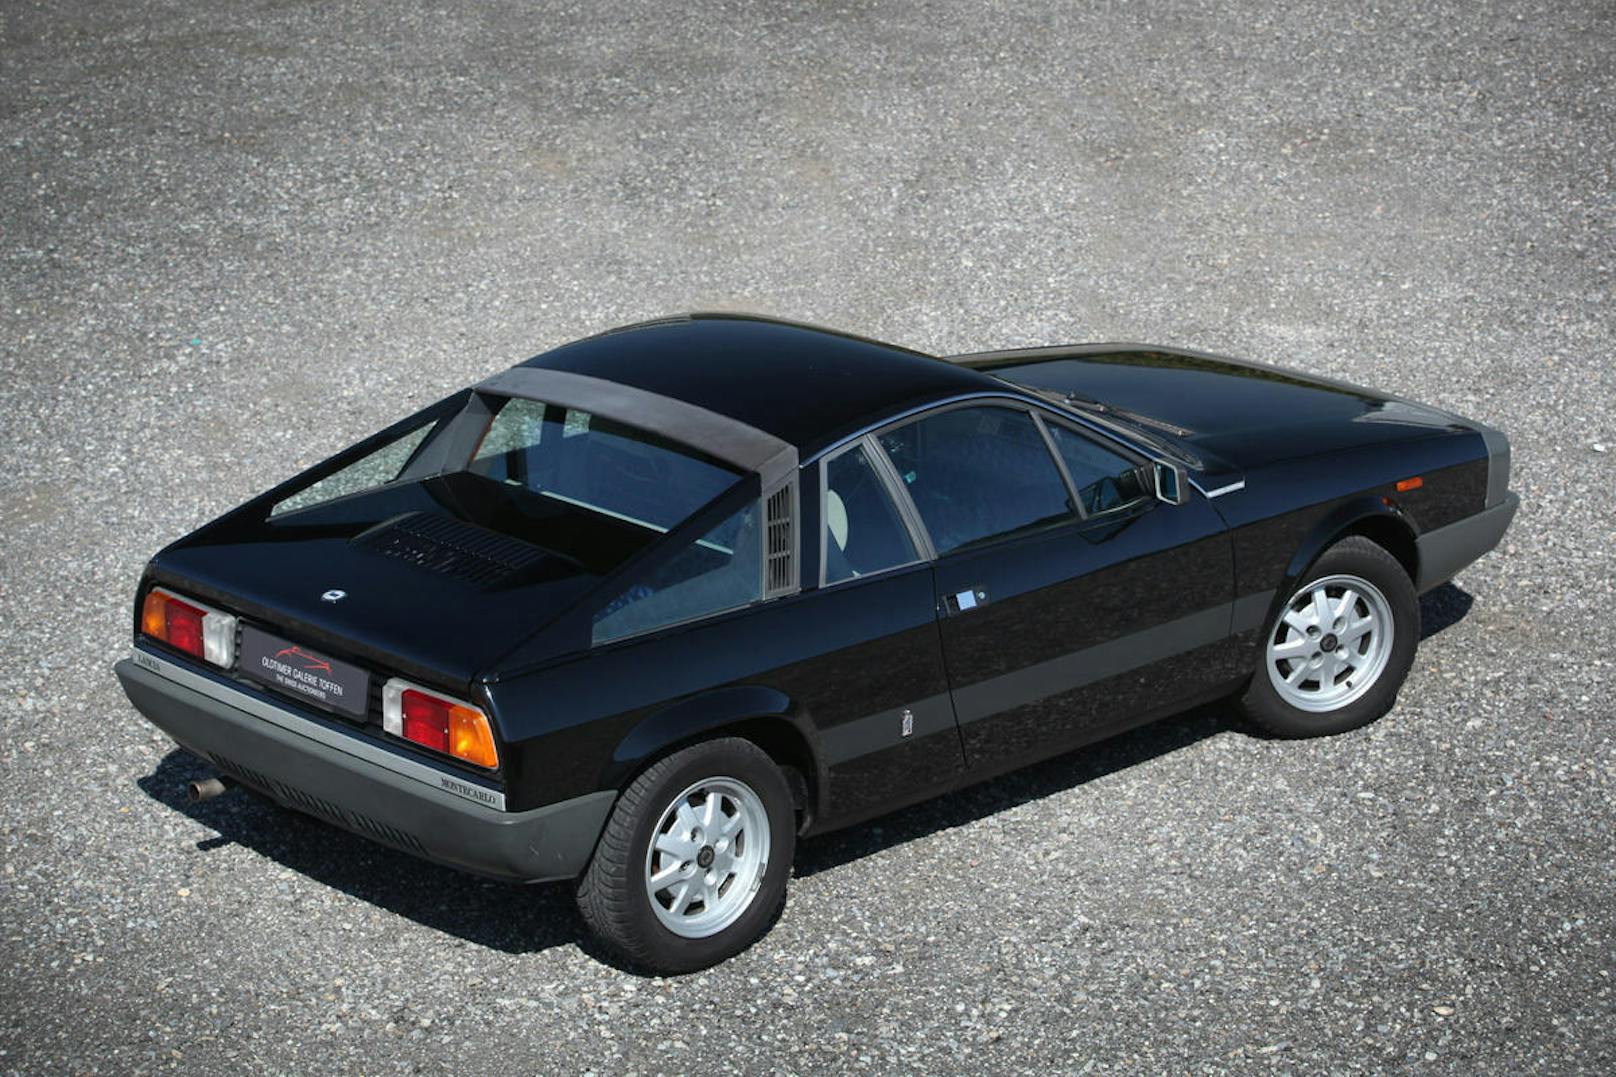 Weniger als 1,7 Meter misst der Lancia in der Breite, moderne Sportwagen sind deutlich grösser.